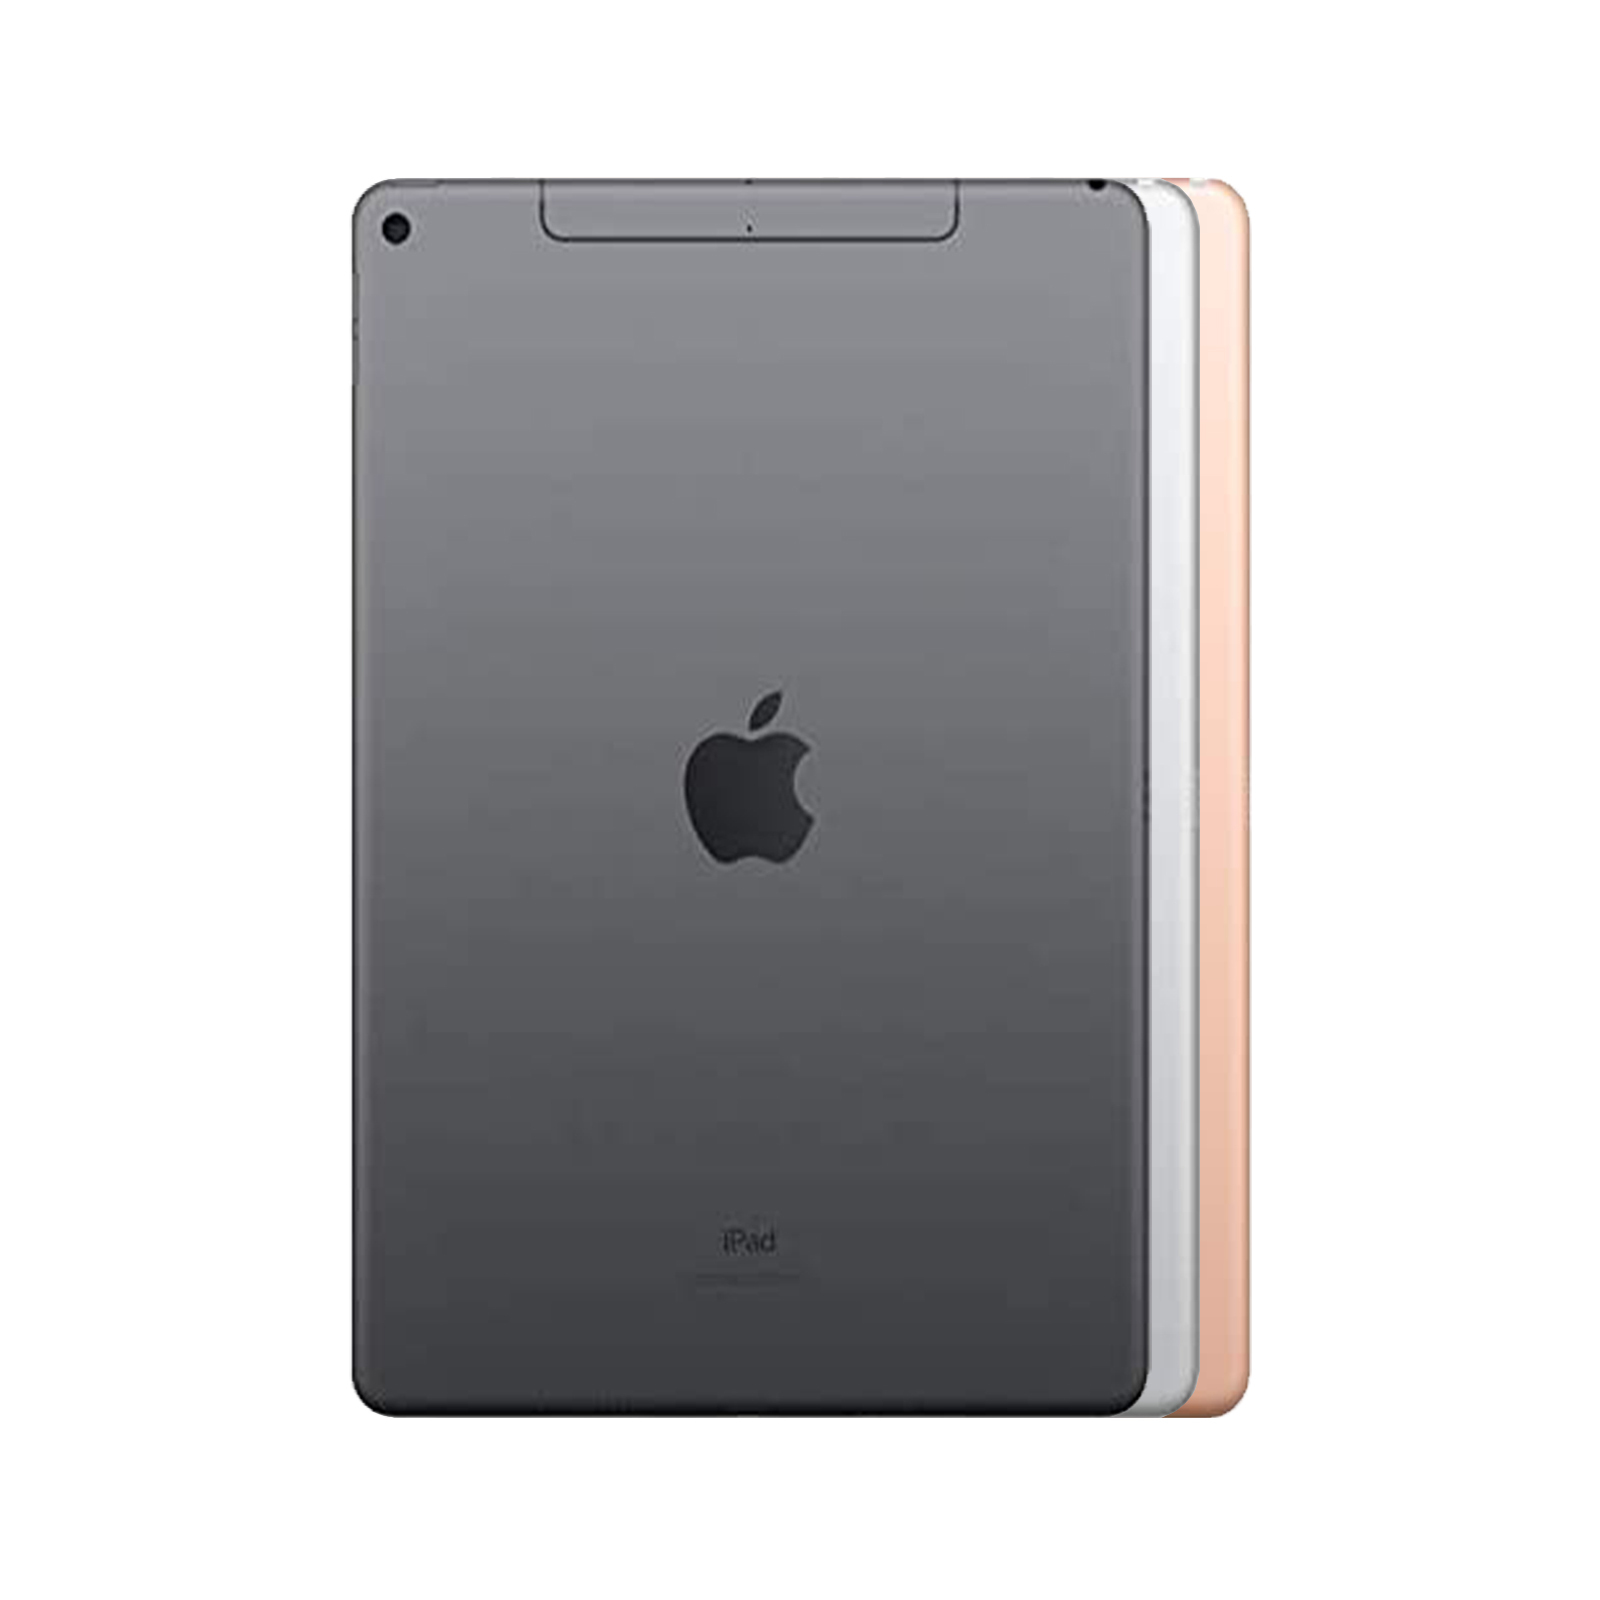 Apple iPad Air 3rd Gen Wi-Fi + Cellular - 64GB 256GB Grey Silver Gold -  Good Con